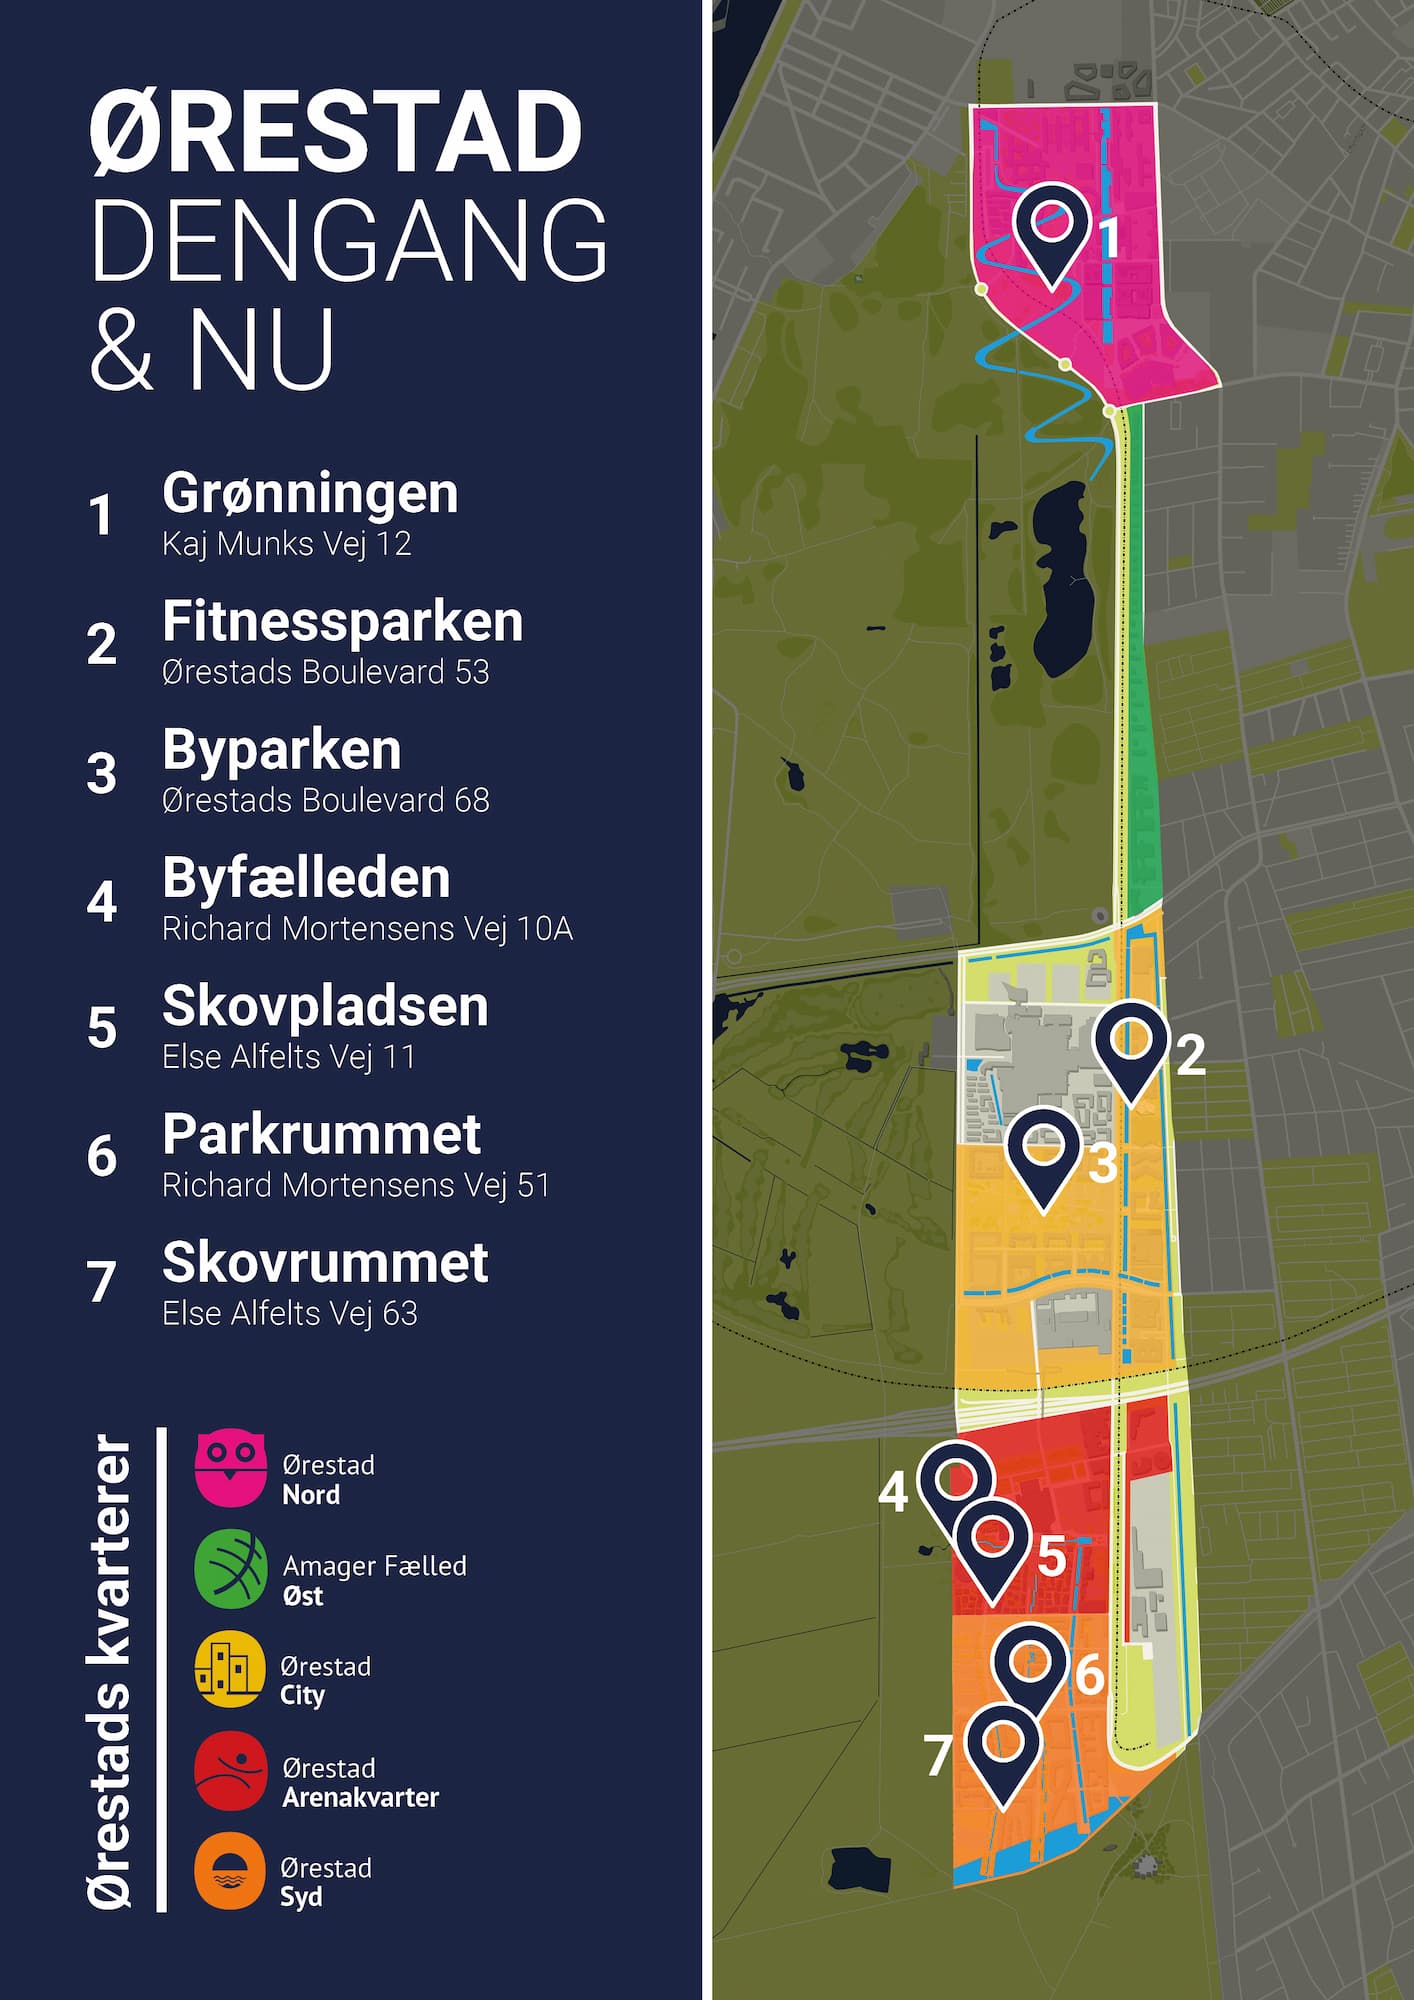 Kort over Ørestad dengang og nu. Kortet viser, hvilke områder man kan bliver klogere på her på siderne.